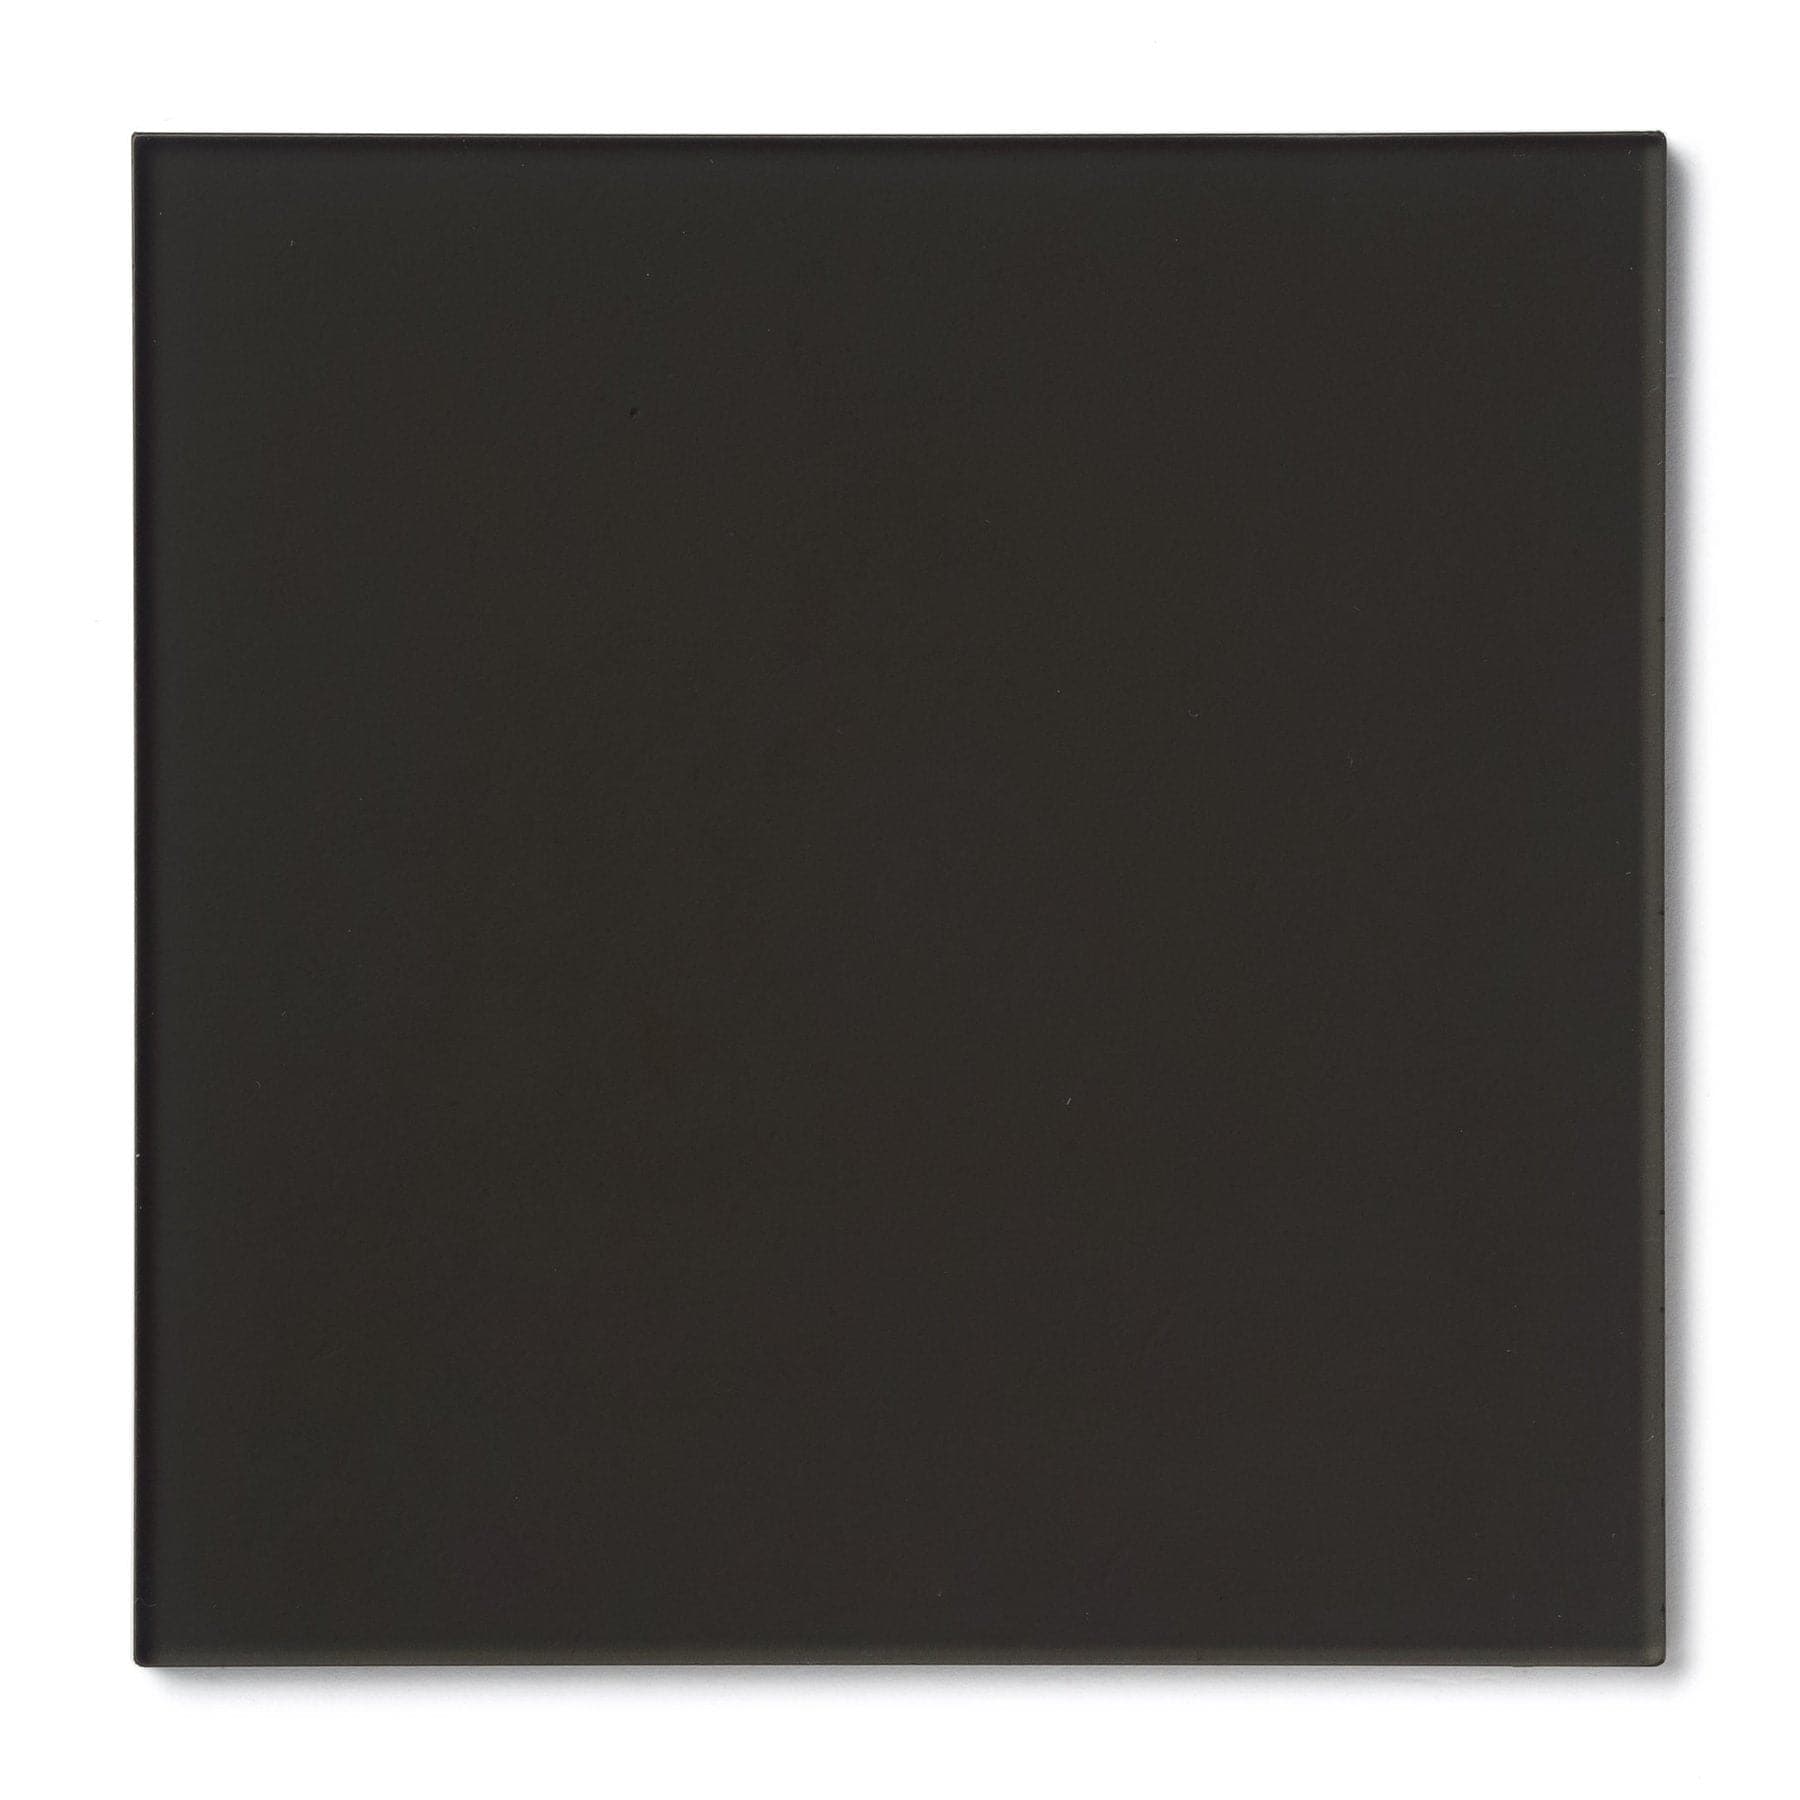 Acrylic Sheet 1/8" Gray Tinted Transparent #2064